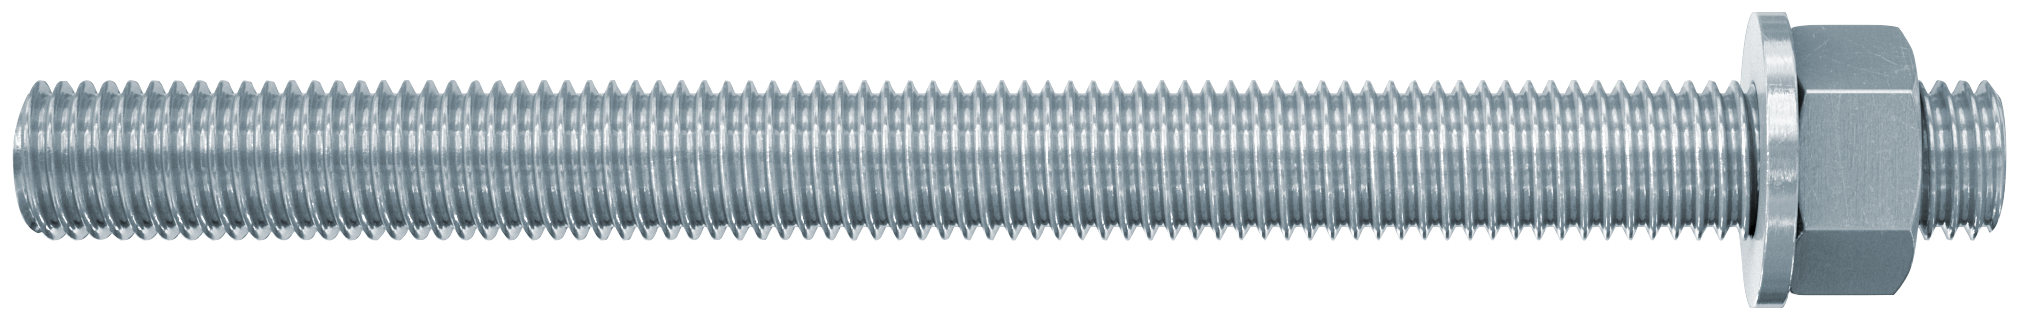 fischer Barre filettate in acciaio FIS A M16X250 cl. 8.8 (1 Pz.) Barra filettata in acciaio zincato con classe di resistenza 8.8, con taglio dritto, dado e rosetta.